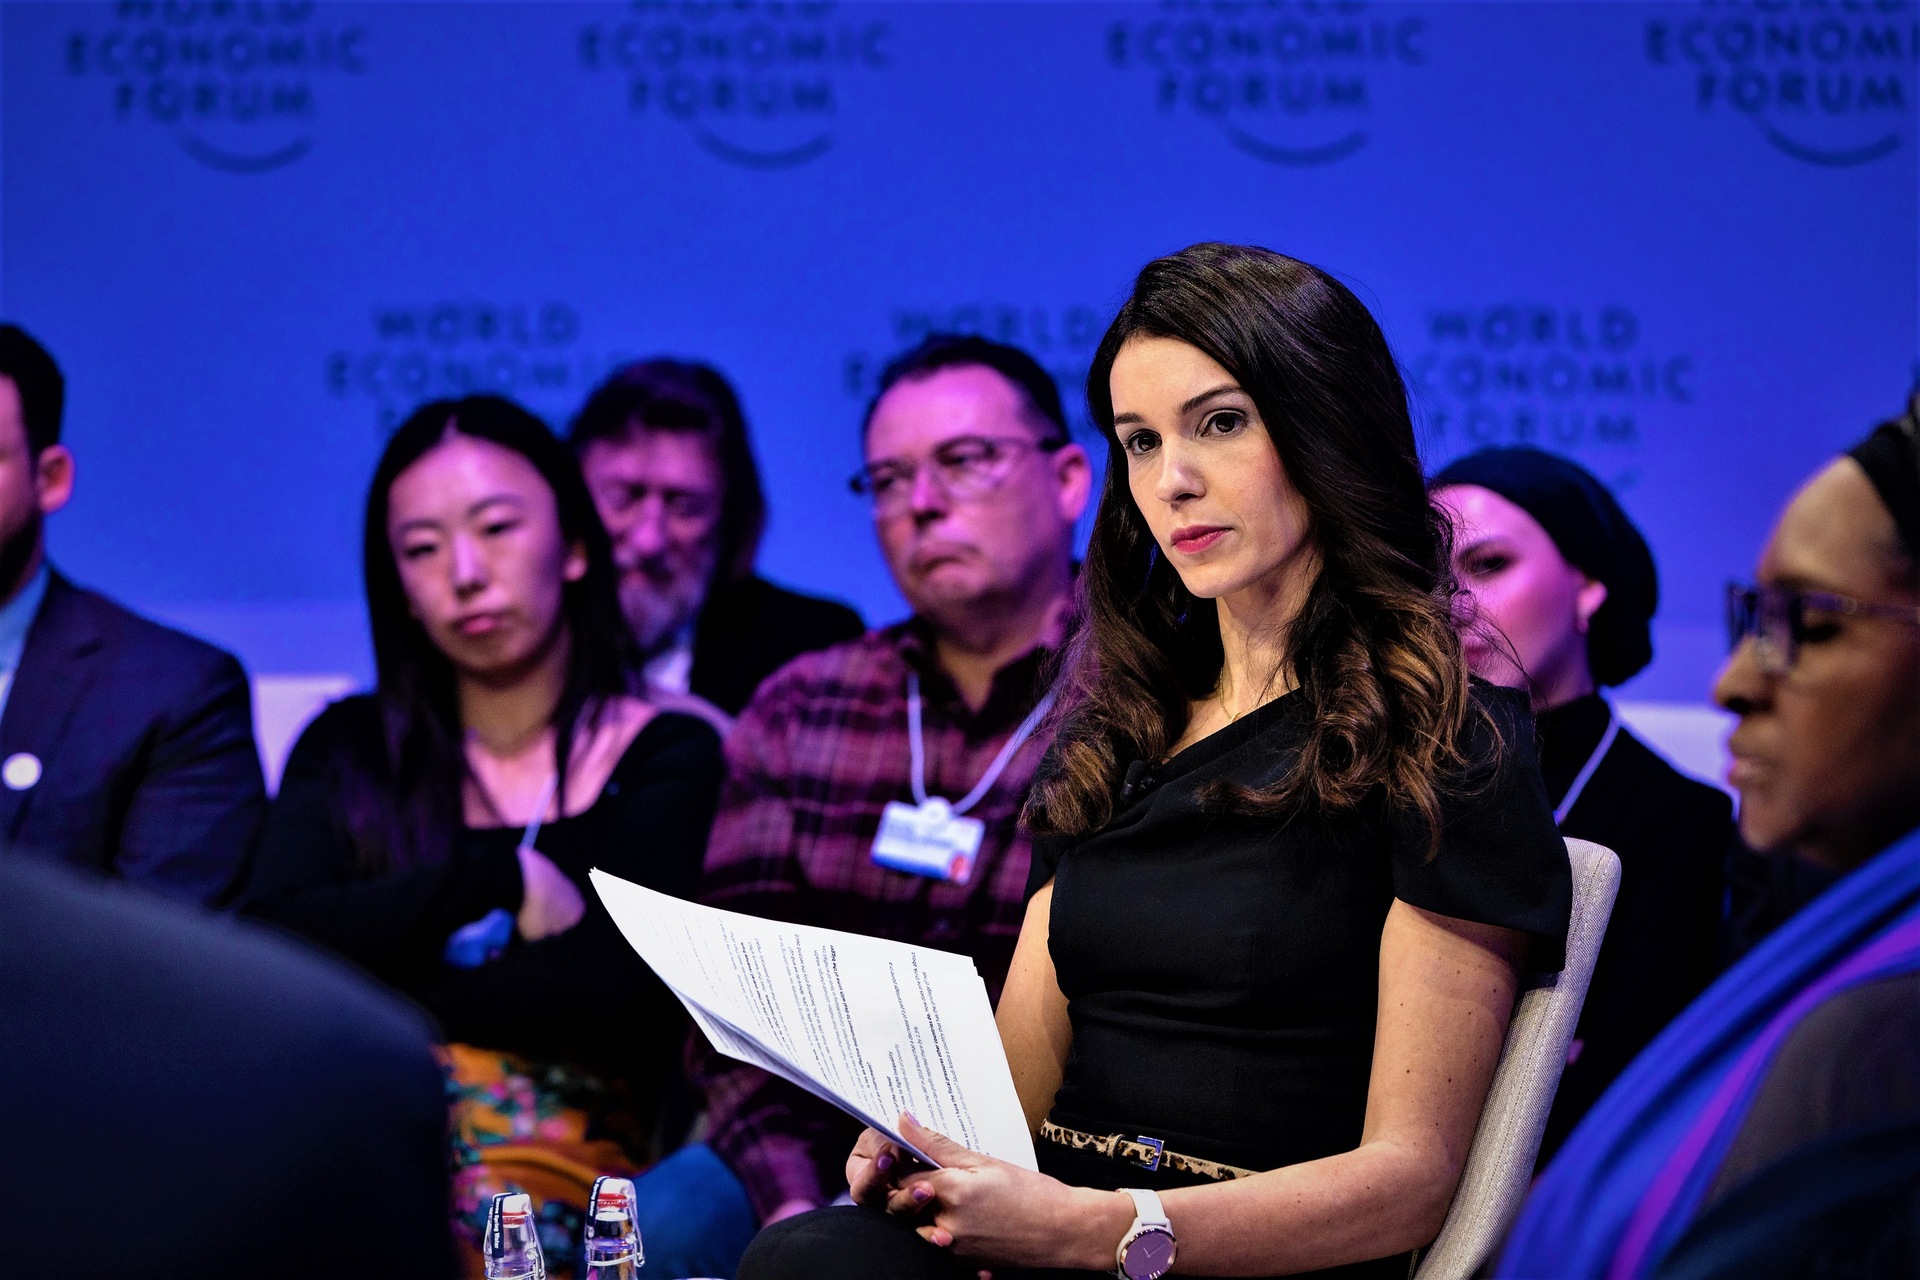 Ciberseguridad: la presentación de la edición 2023 del "Global Tax Reform Stalling" en el Foro Económico Mundial de Davos: el discurso de Joumanna Bercetche, presentadora de CNBC (Foto: Faruk Pinjo/WEF)